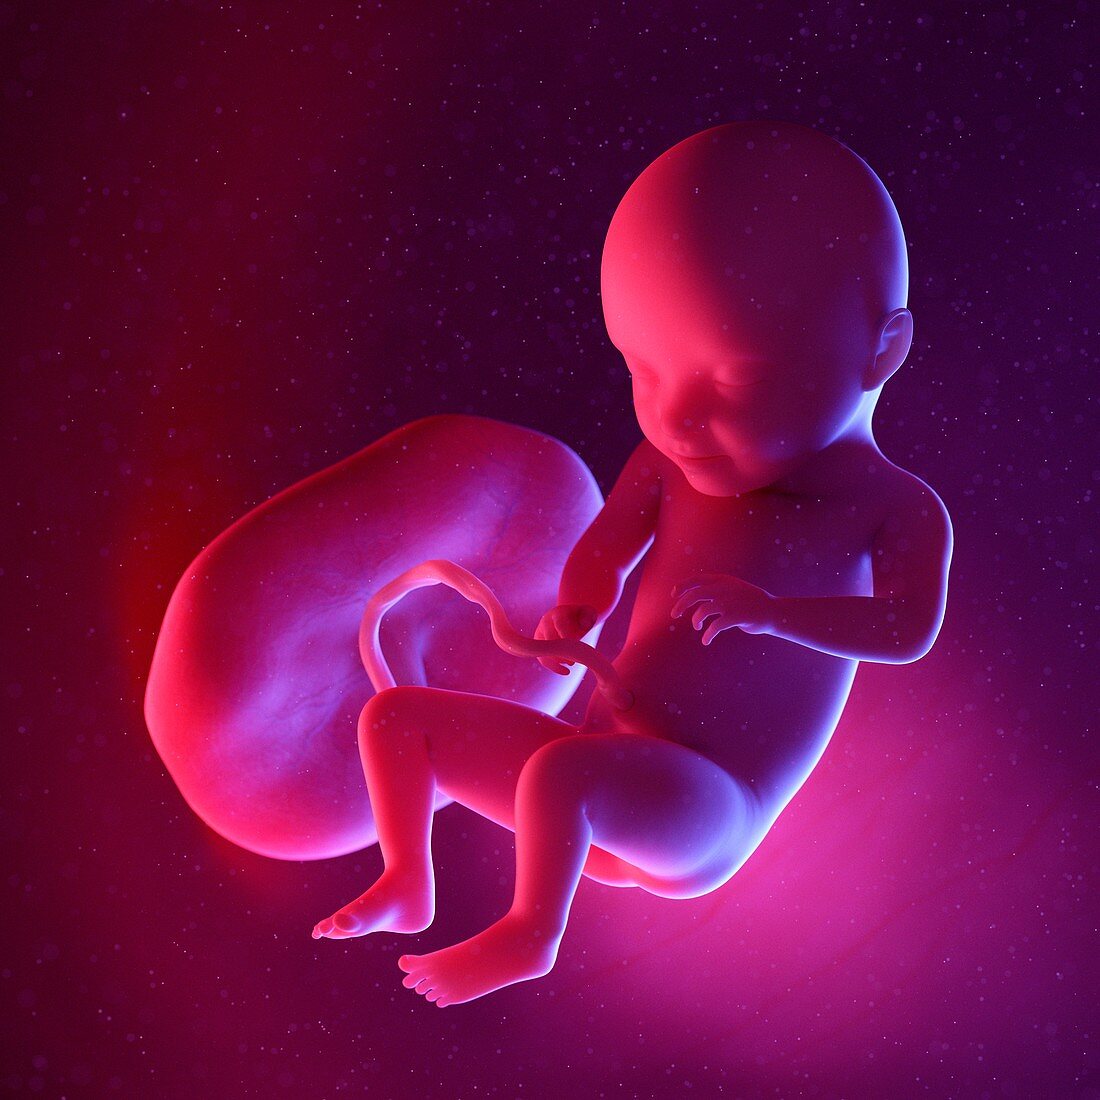 Fetus at week 31, illustration